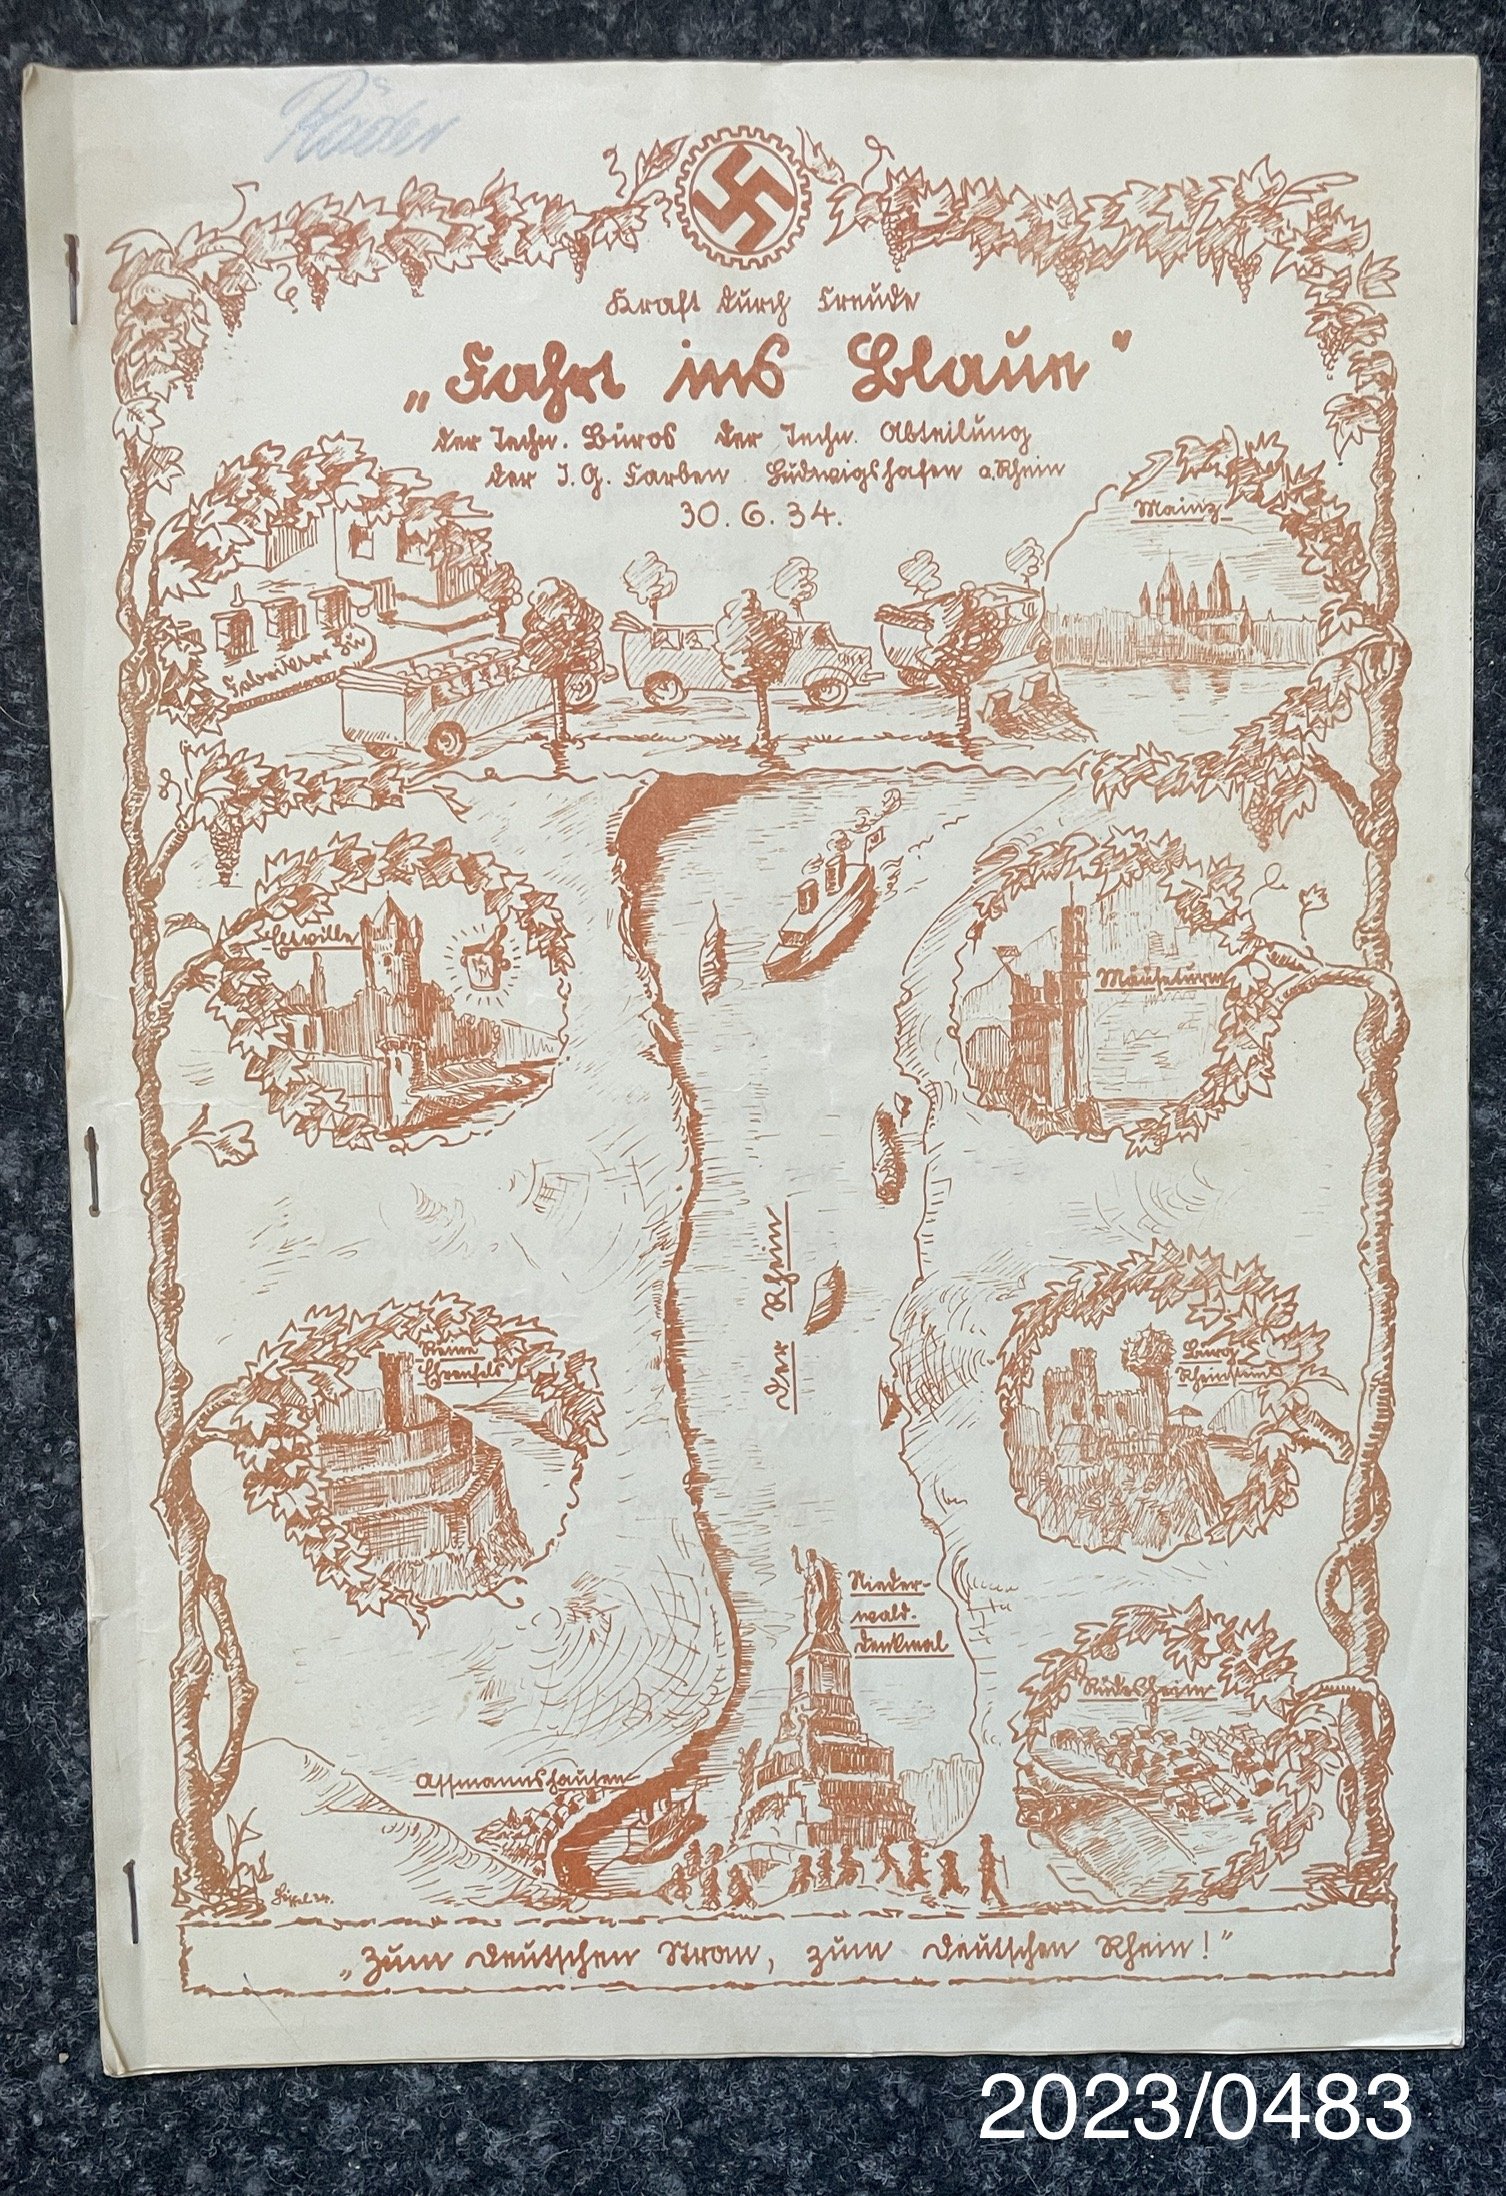 Broschüre "Fahrt ins Blaun" 30.06.1934 (Stadtmuseum Bad Dürkheim im Kulturzentrum Haus Catoir CC BY-NC-SA)